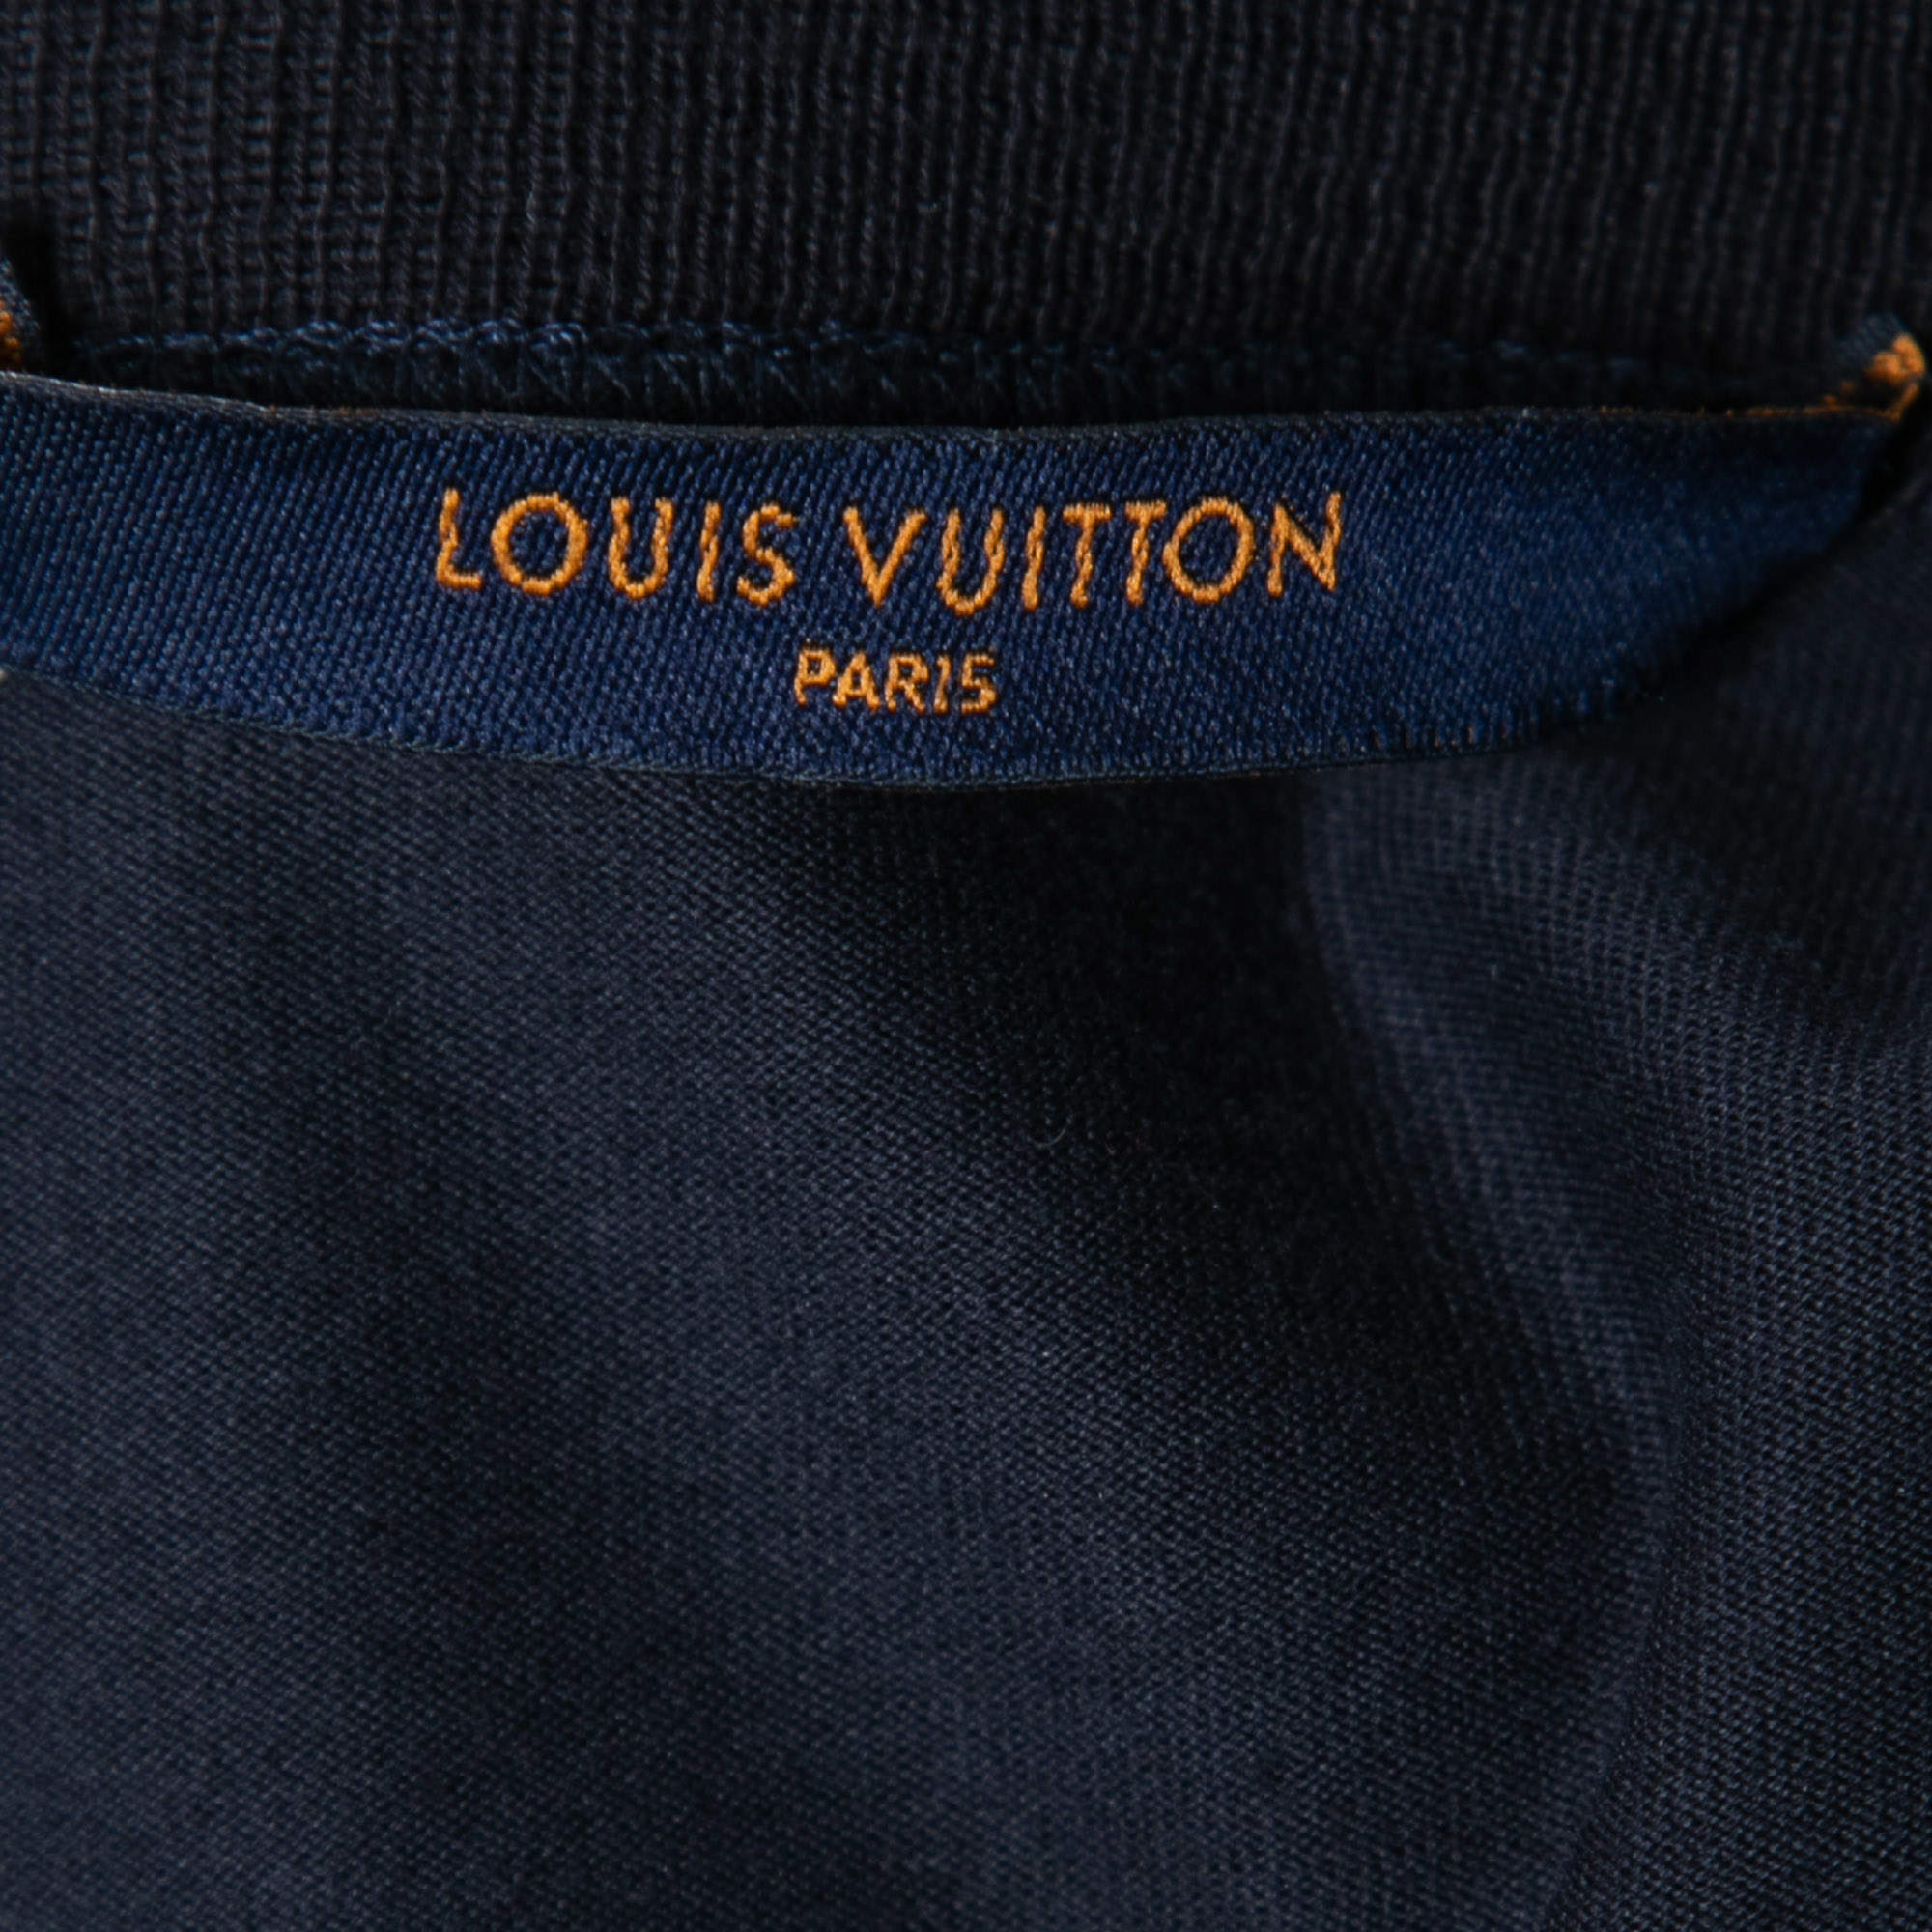 Louis Vuitton Navy Blue Merci Print Cotton Crewneck T-Shirt S - ShopStyle